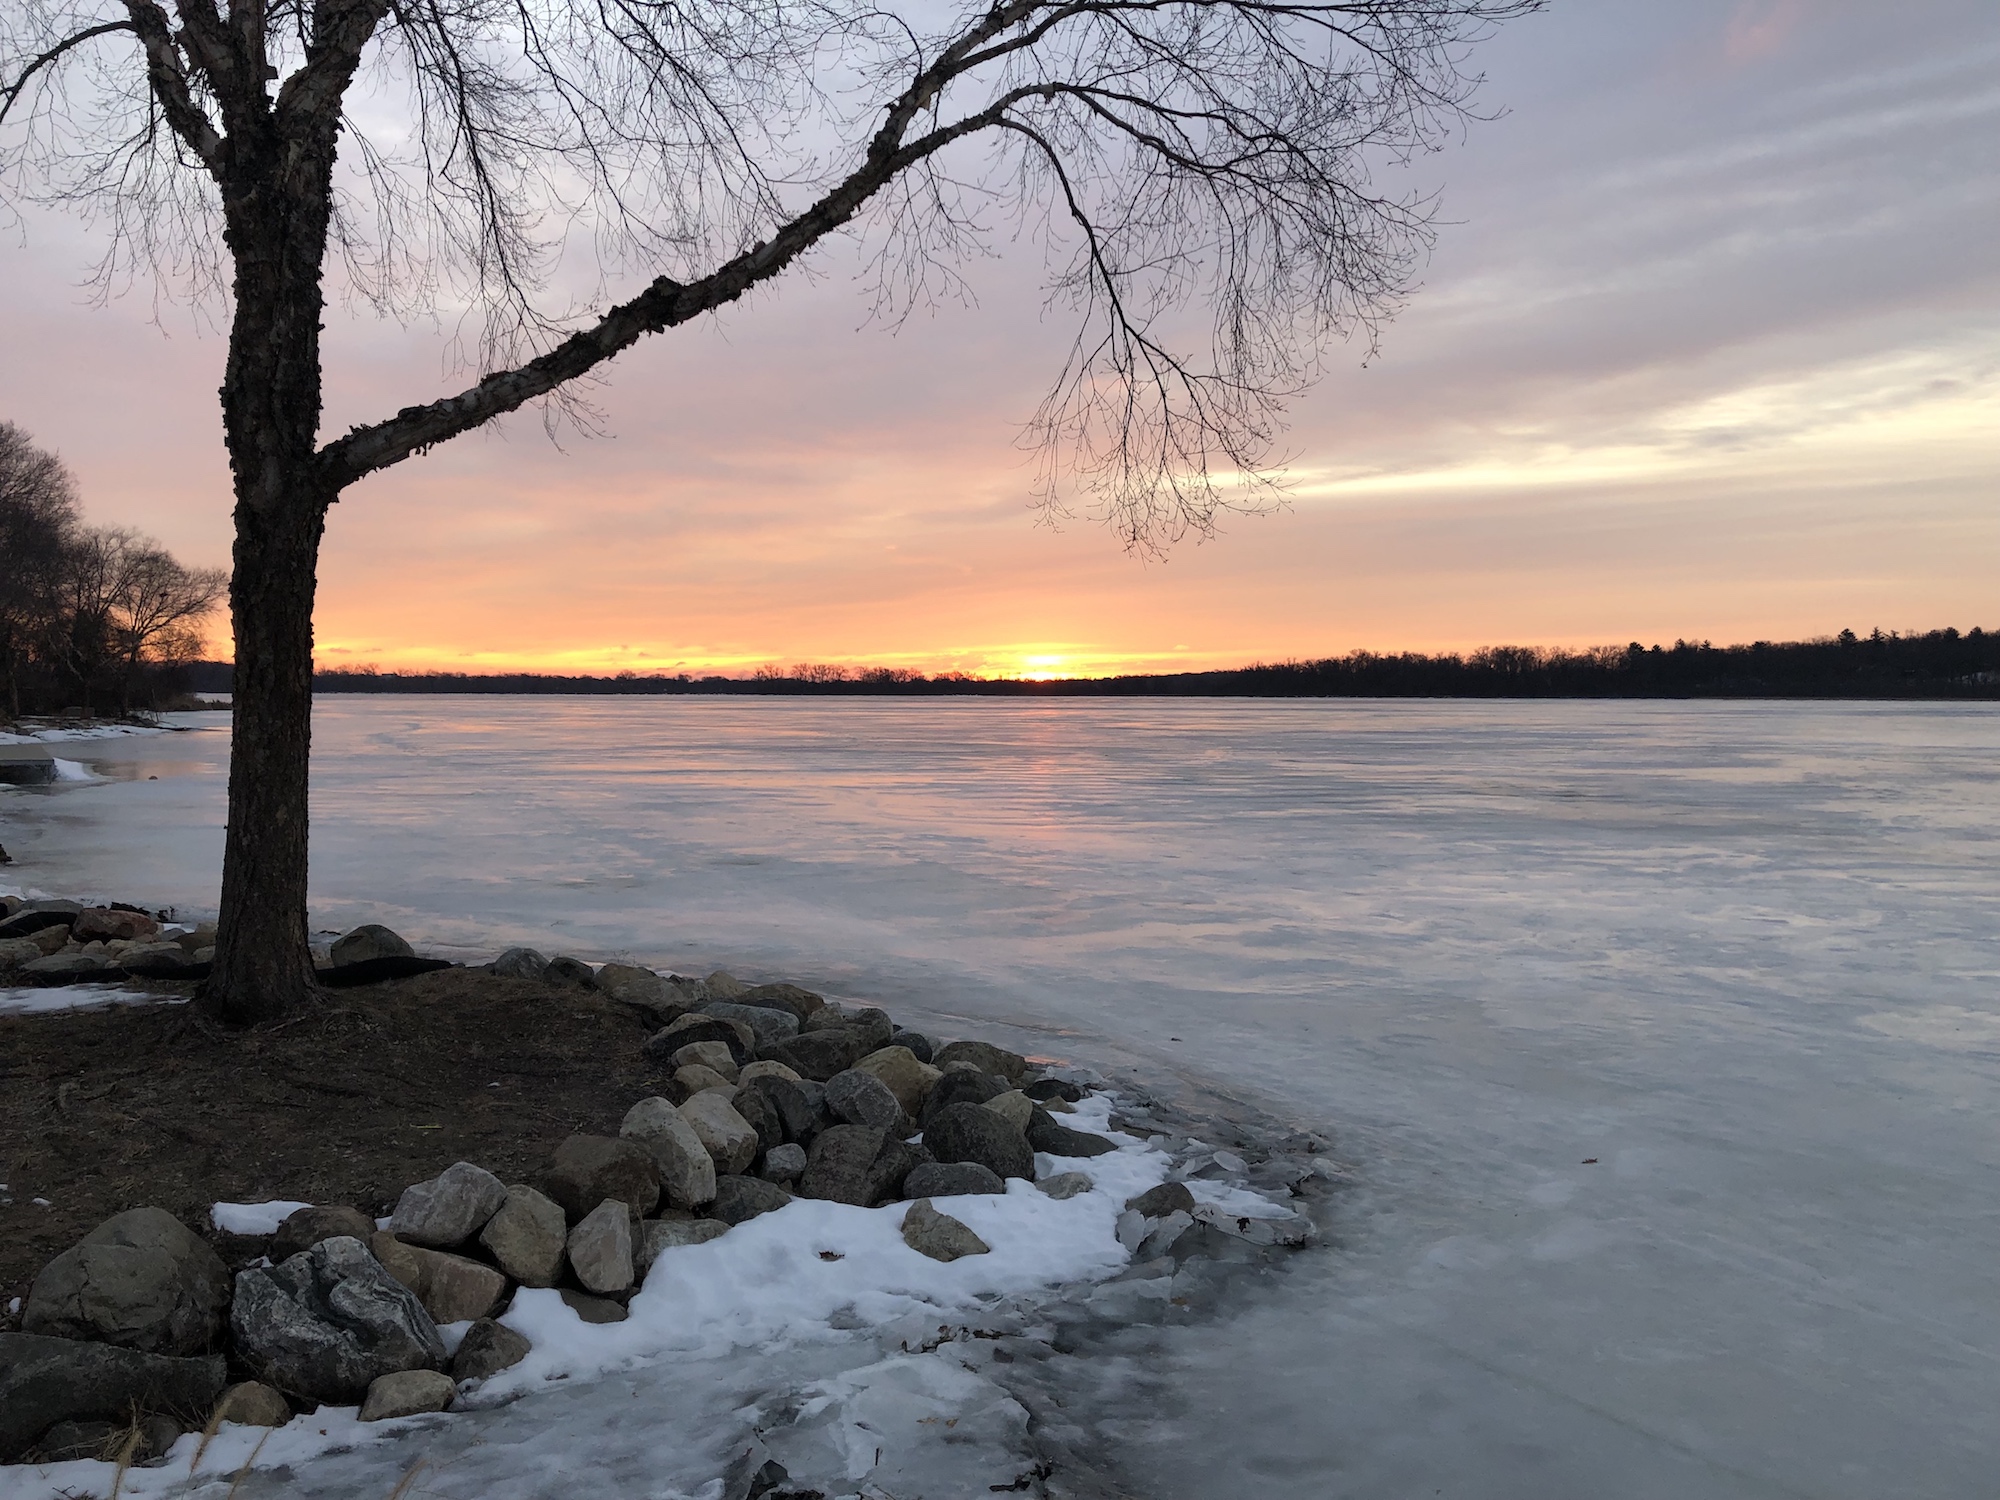 Lake Wingra on February 5, 2019.